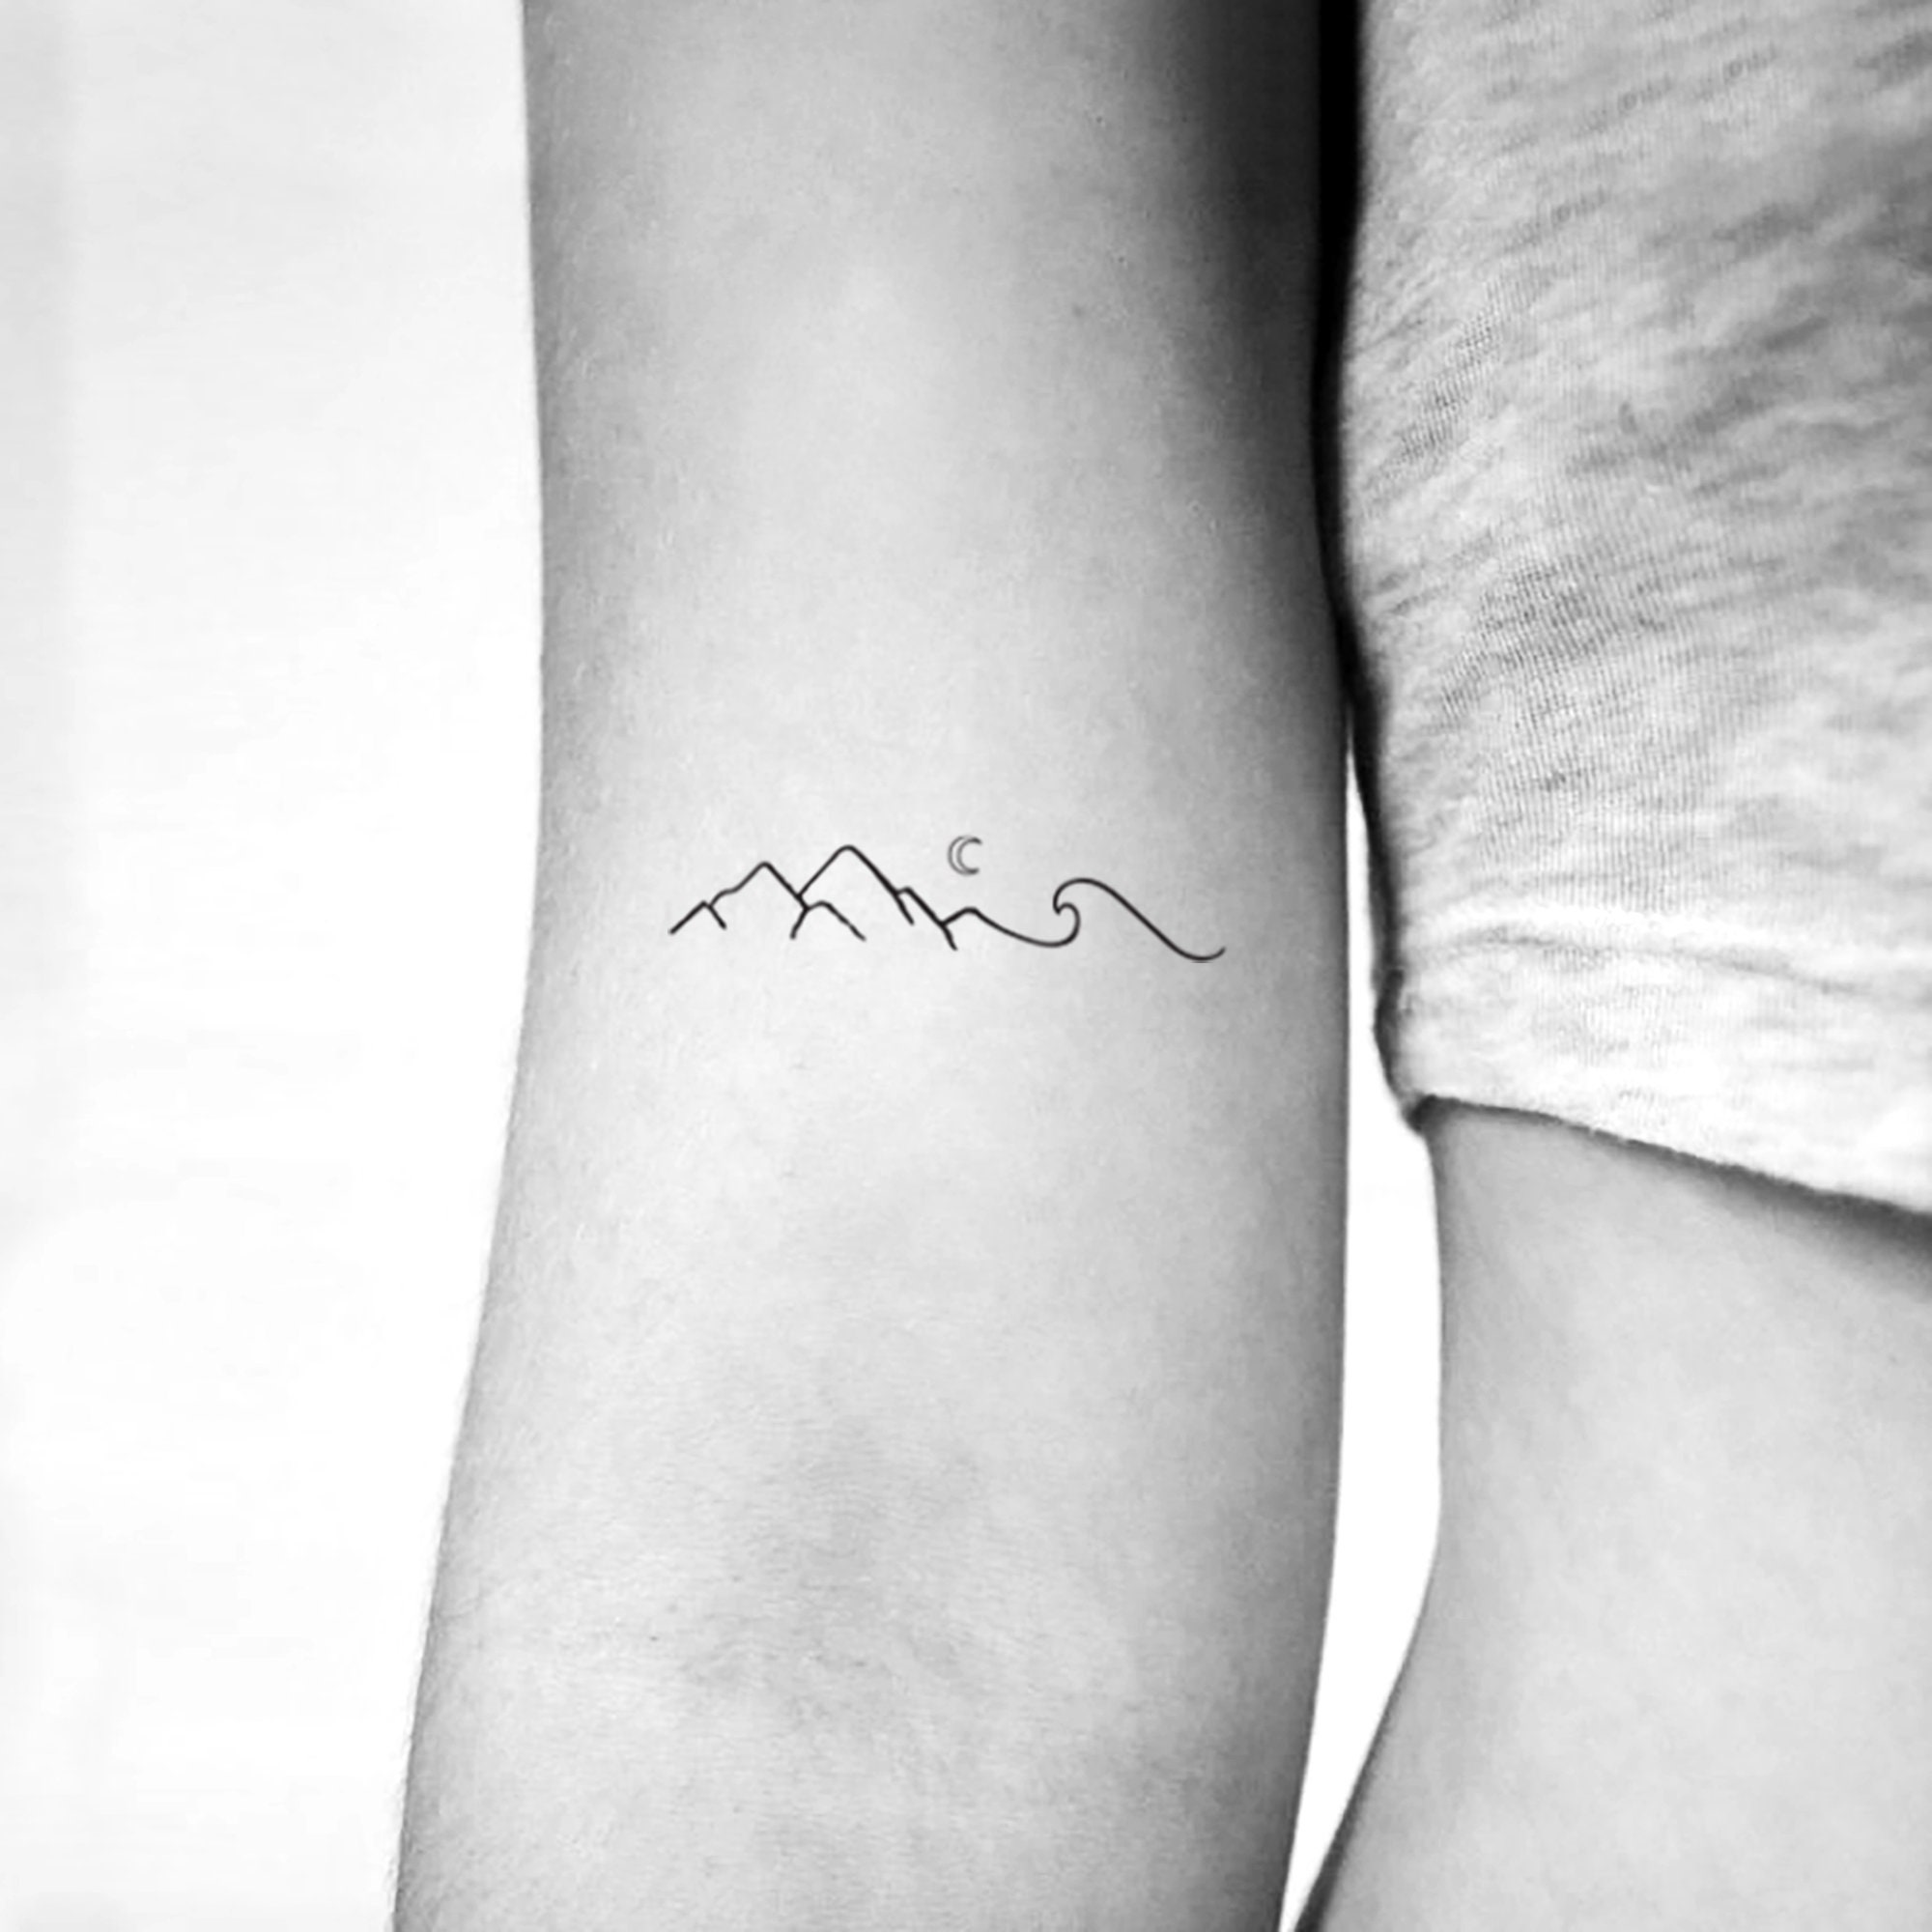 Minimalist mountain tattoo on the inner forearm